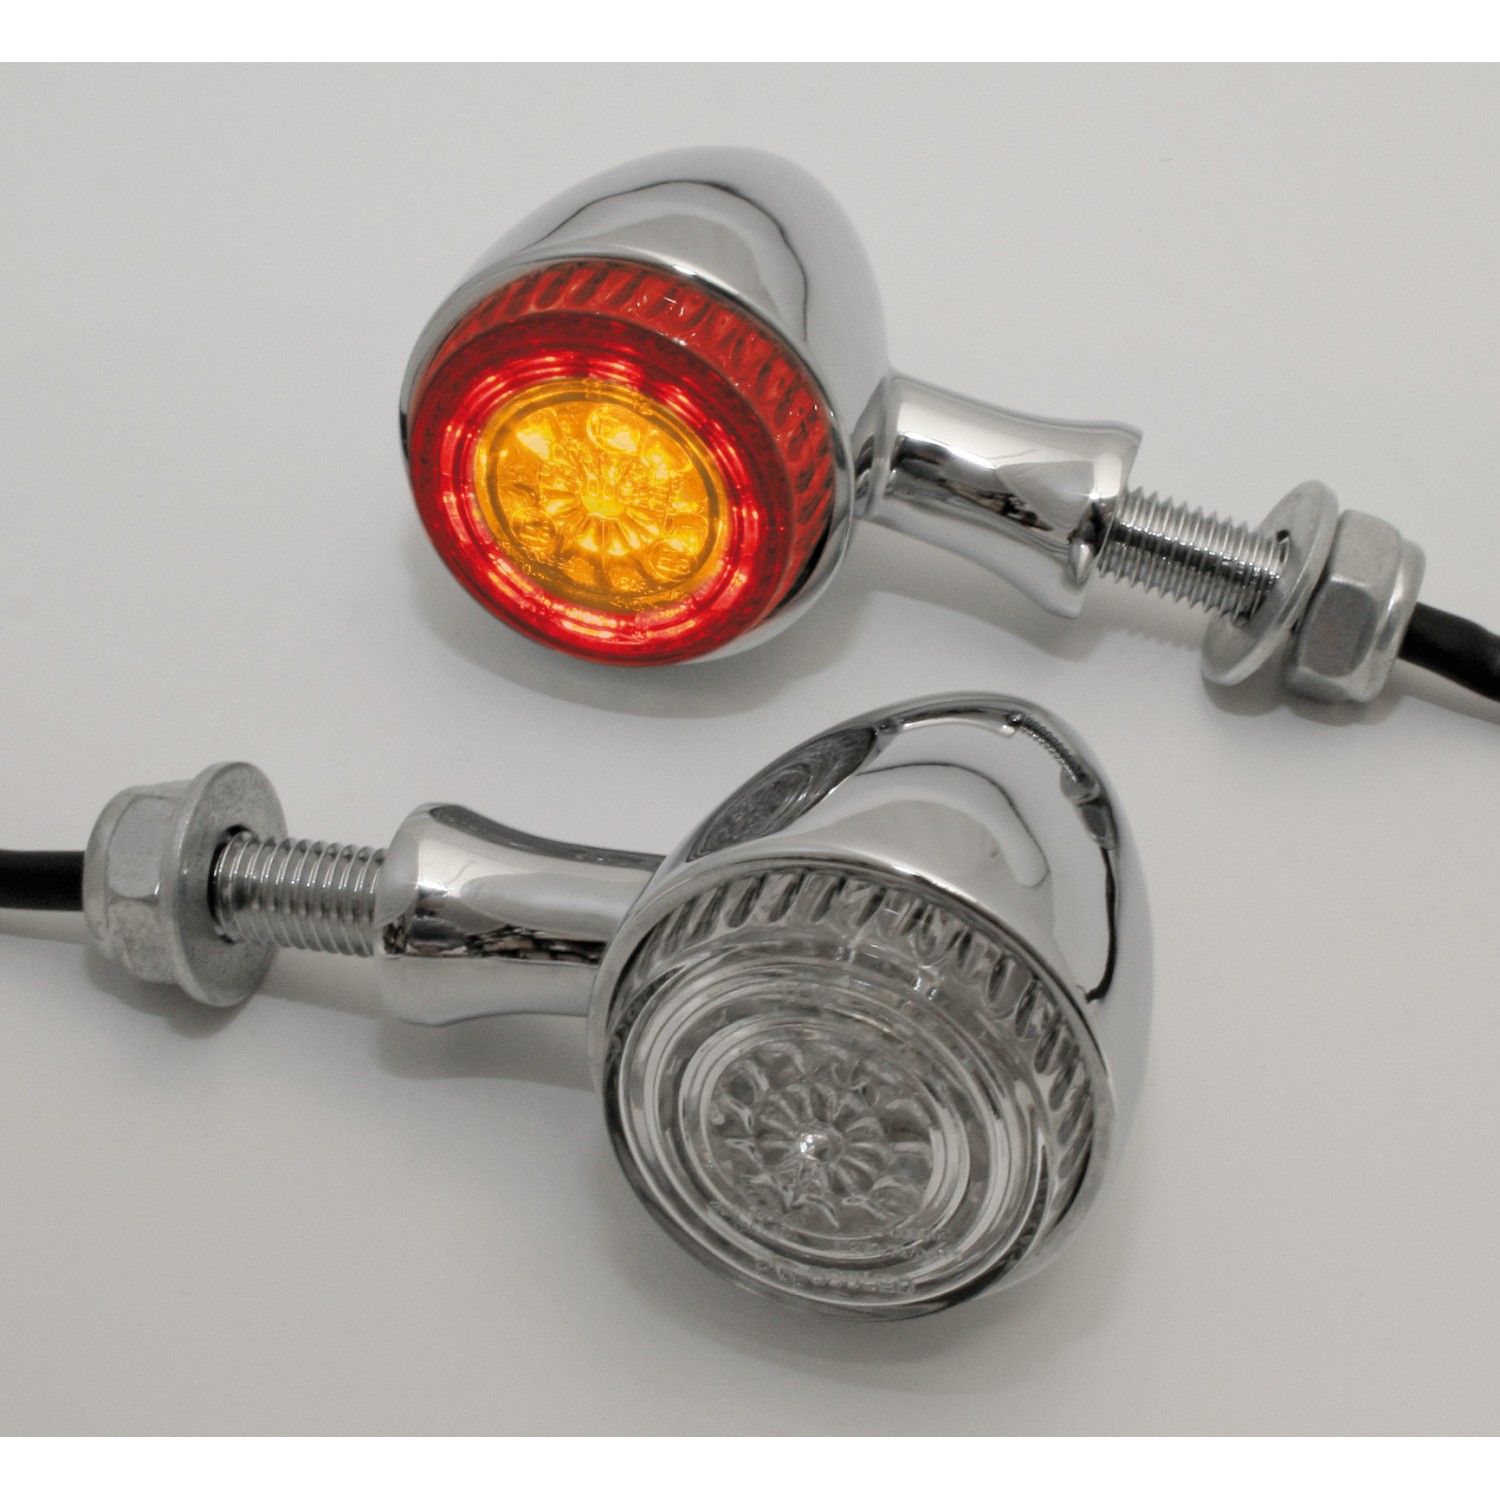 Clignotants LED pour motos, feu arrière, clignotant à eau courante